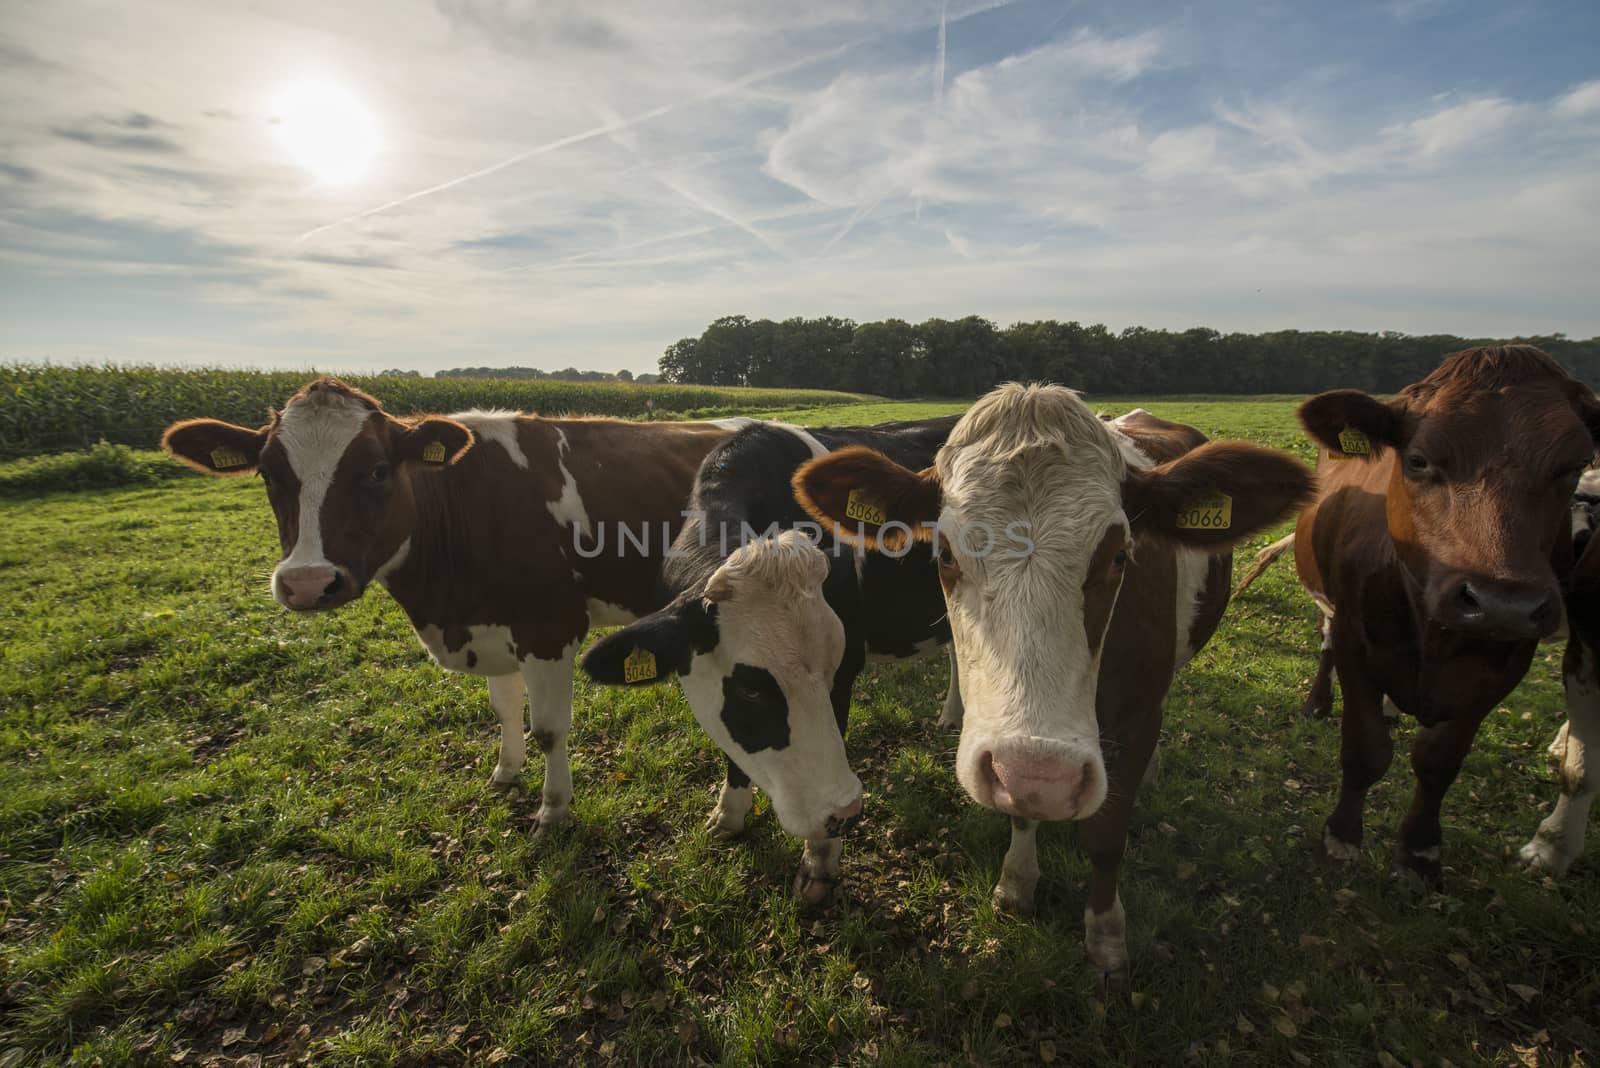 Curious Dutch cows by Tofotografie